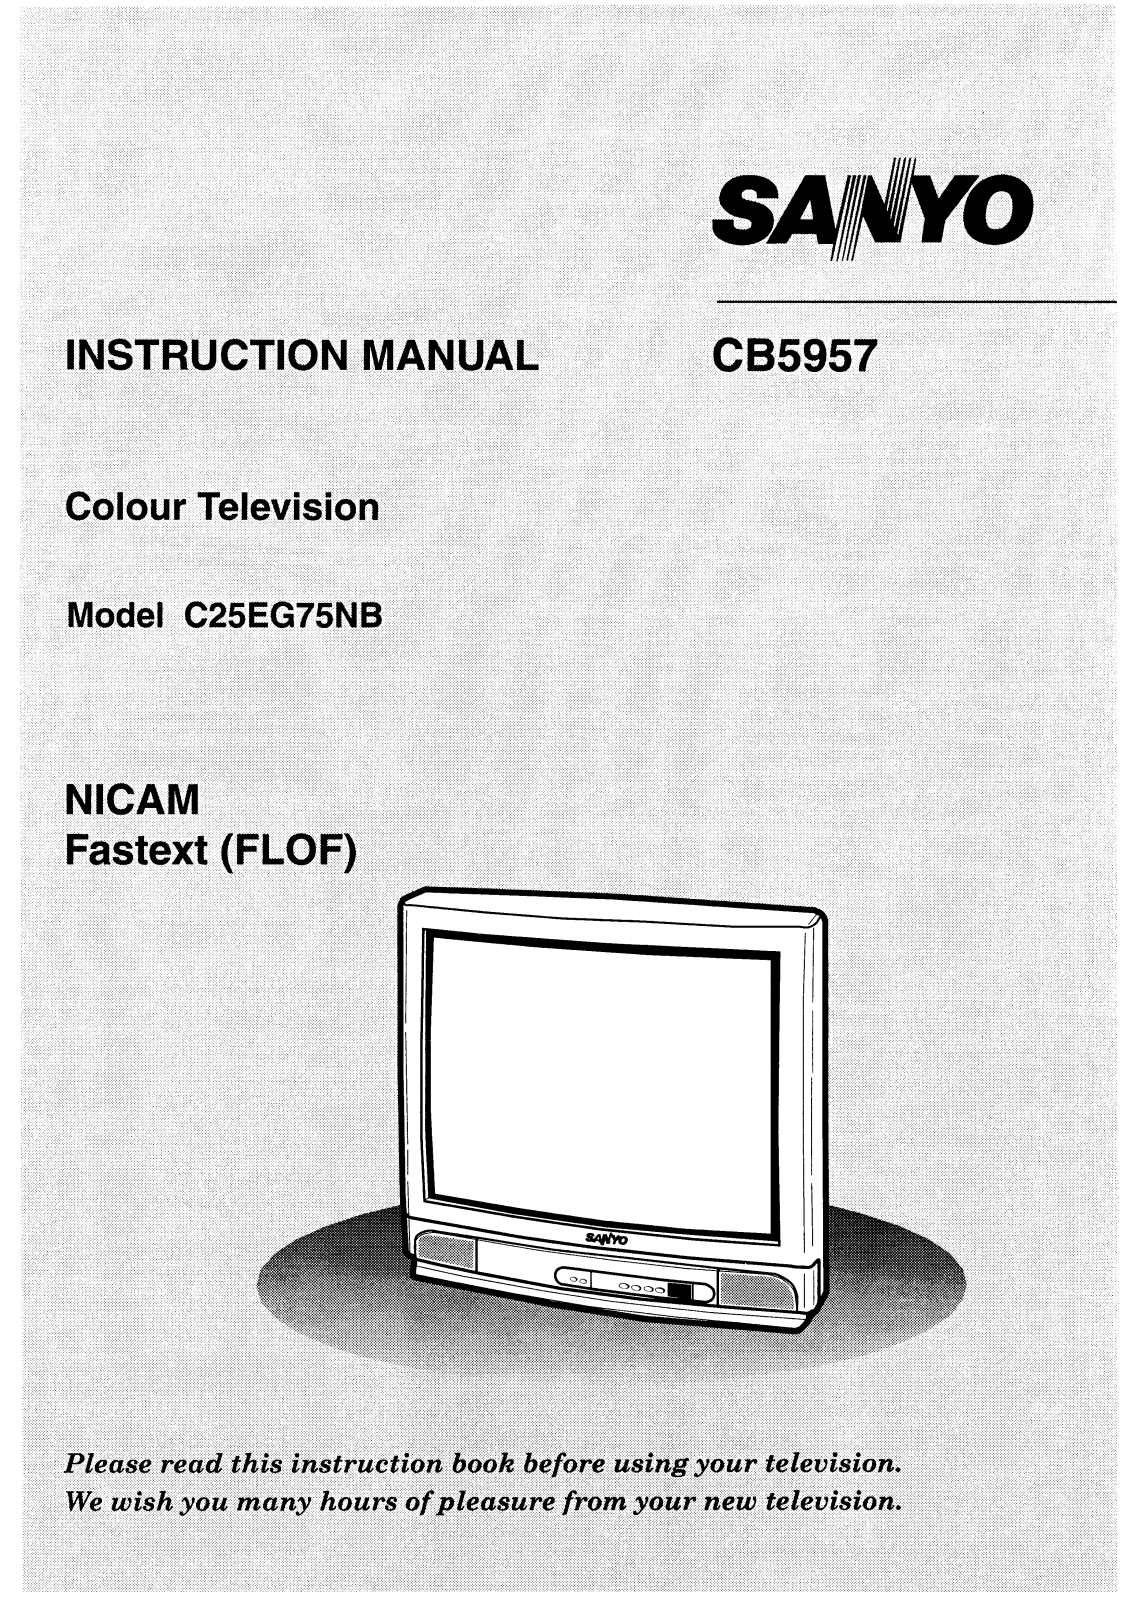 Sanyo CB5957 Instruction Manual